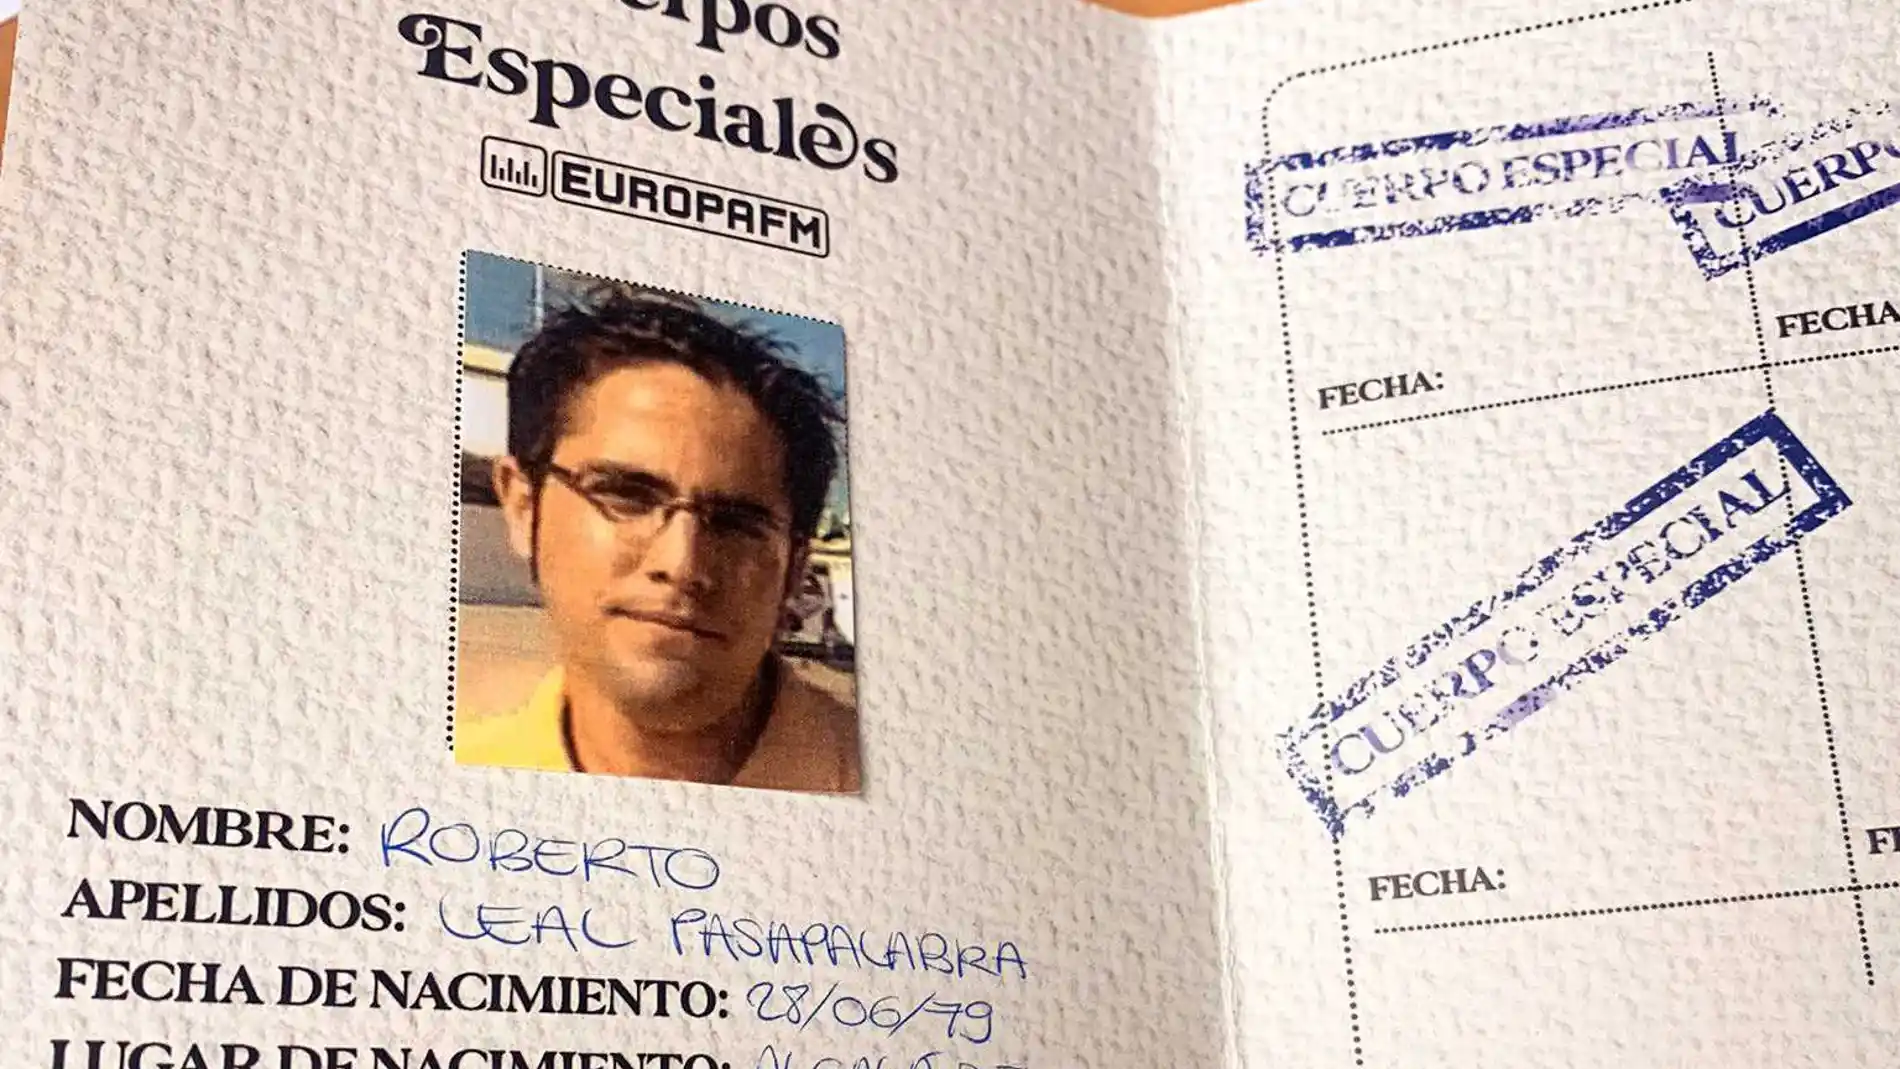 El pasaporte de Roberto Leal en 'Cuerpos especiales'